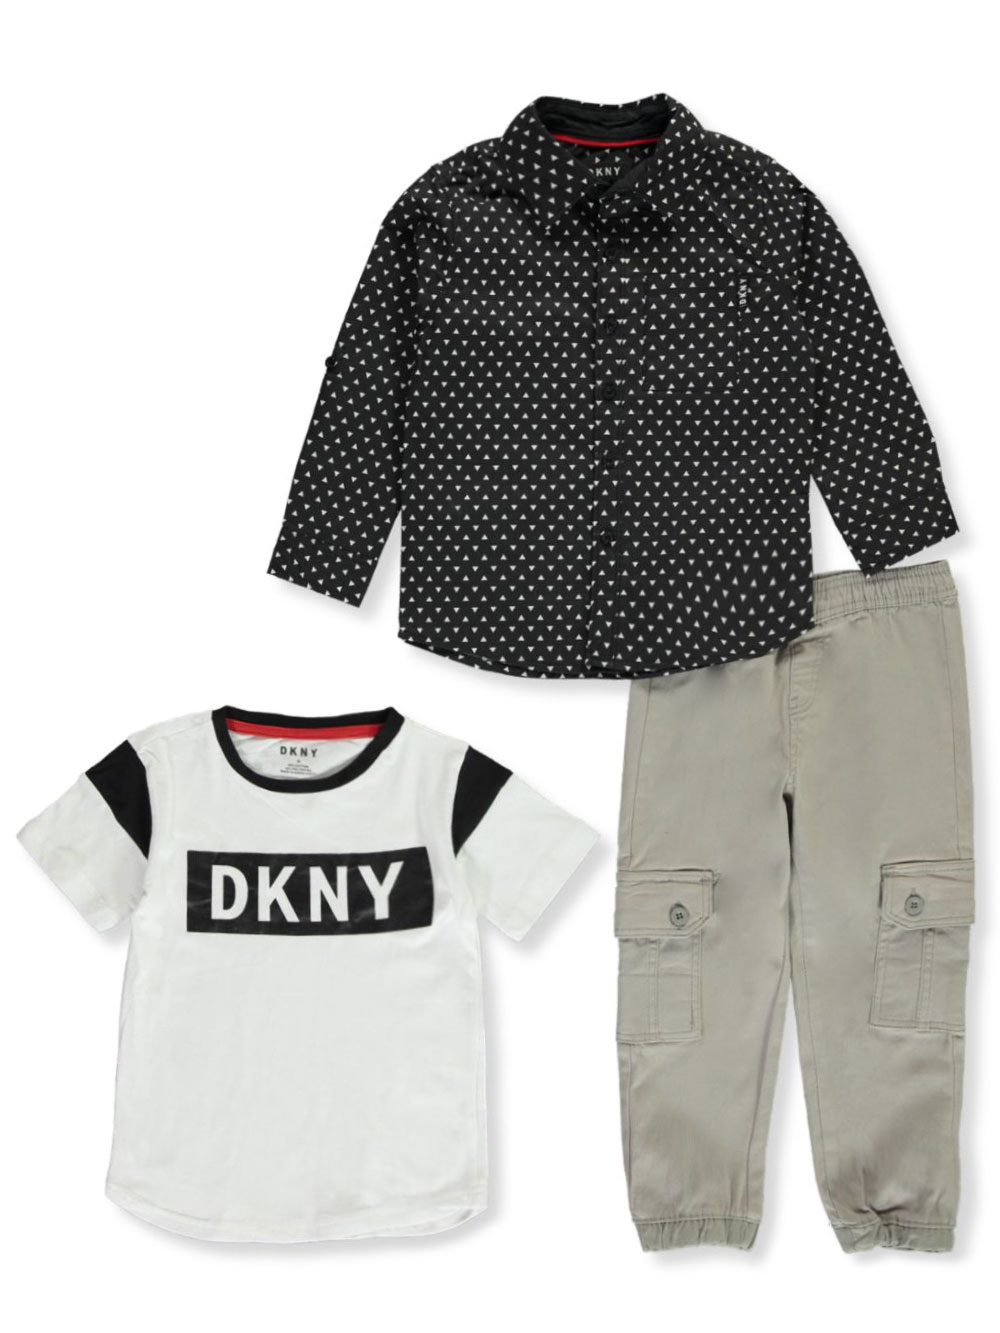 DKNY Boys 3 Piece Set